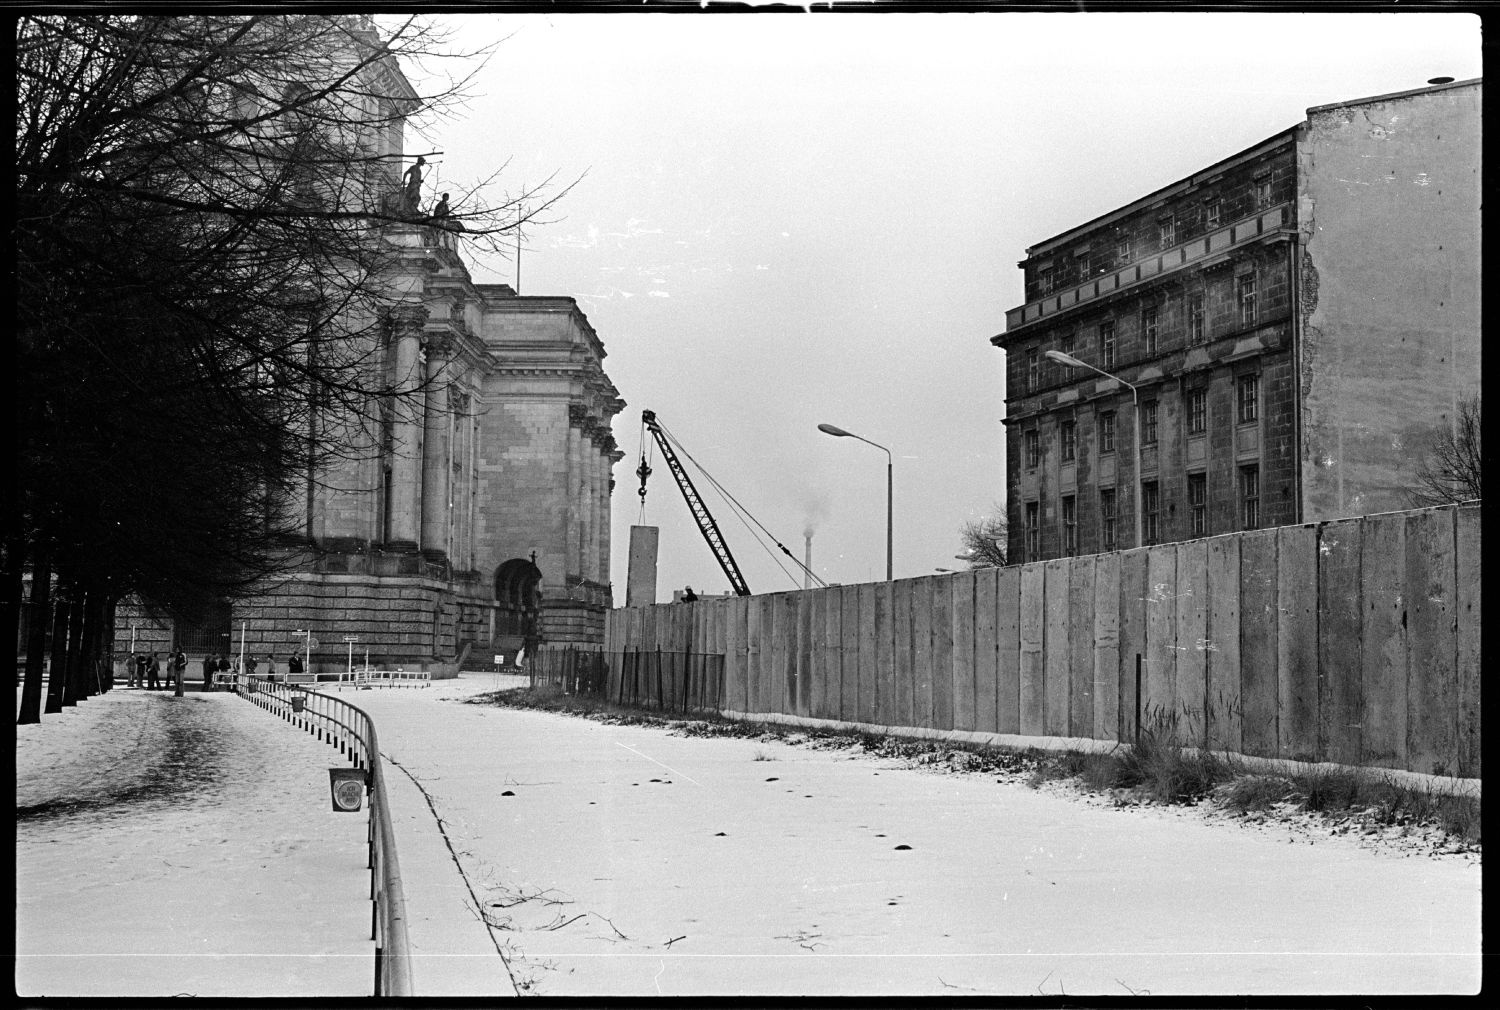 s/w-Fotografie: Ausbau der Berliner Mauer am Brandenburger Tor in Berlin-Mitte (AlliiertenMuseum/U.S. Army Photograph Public Domain Mark)